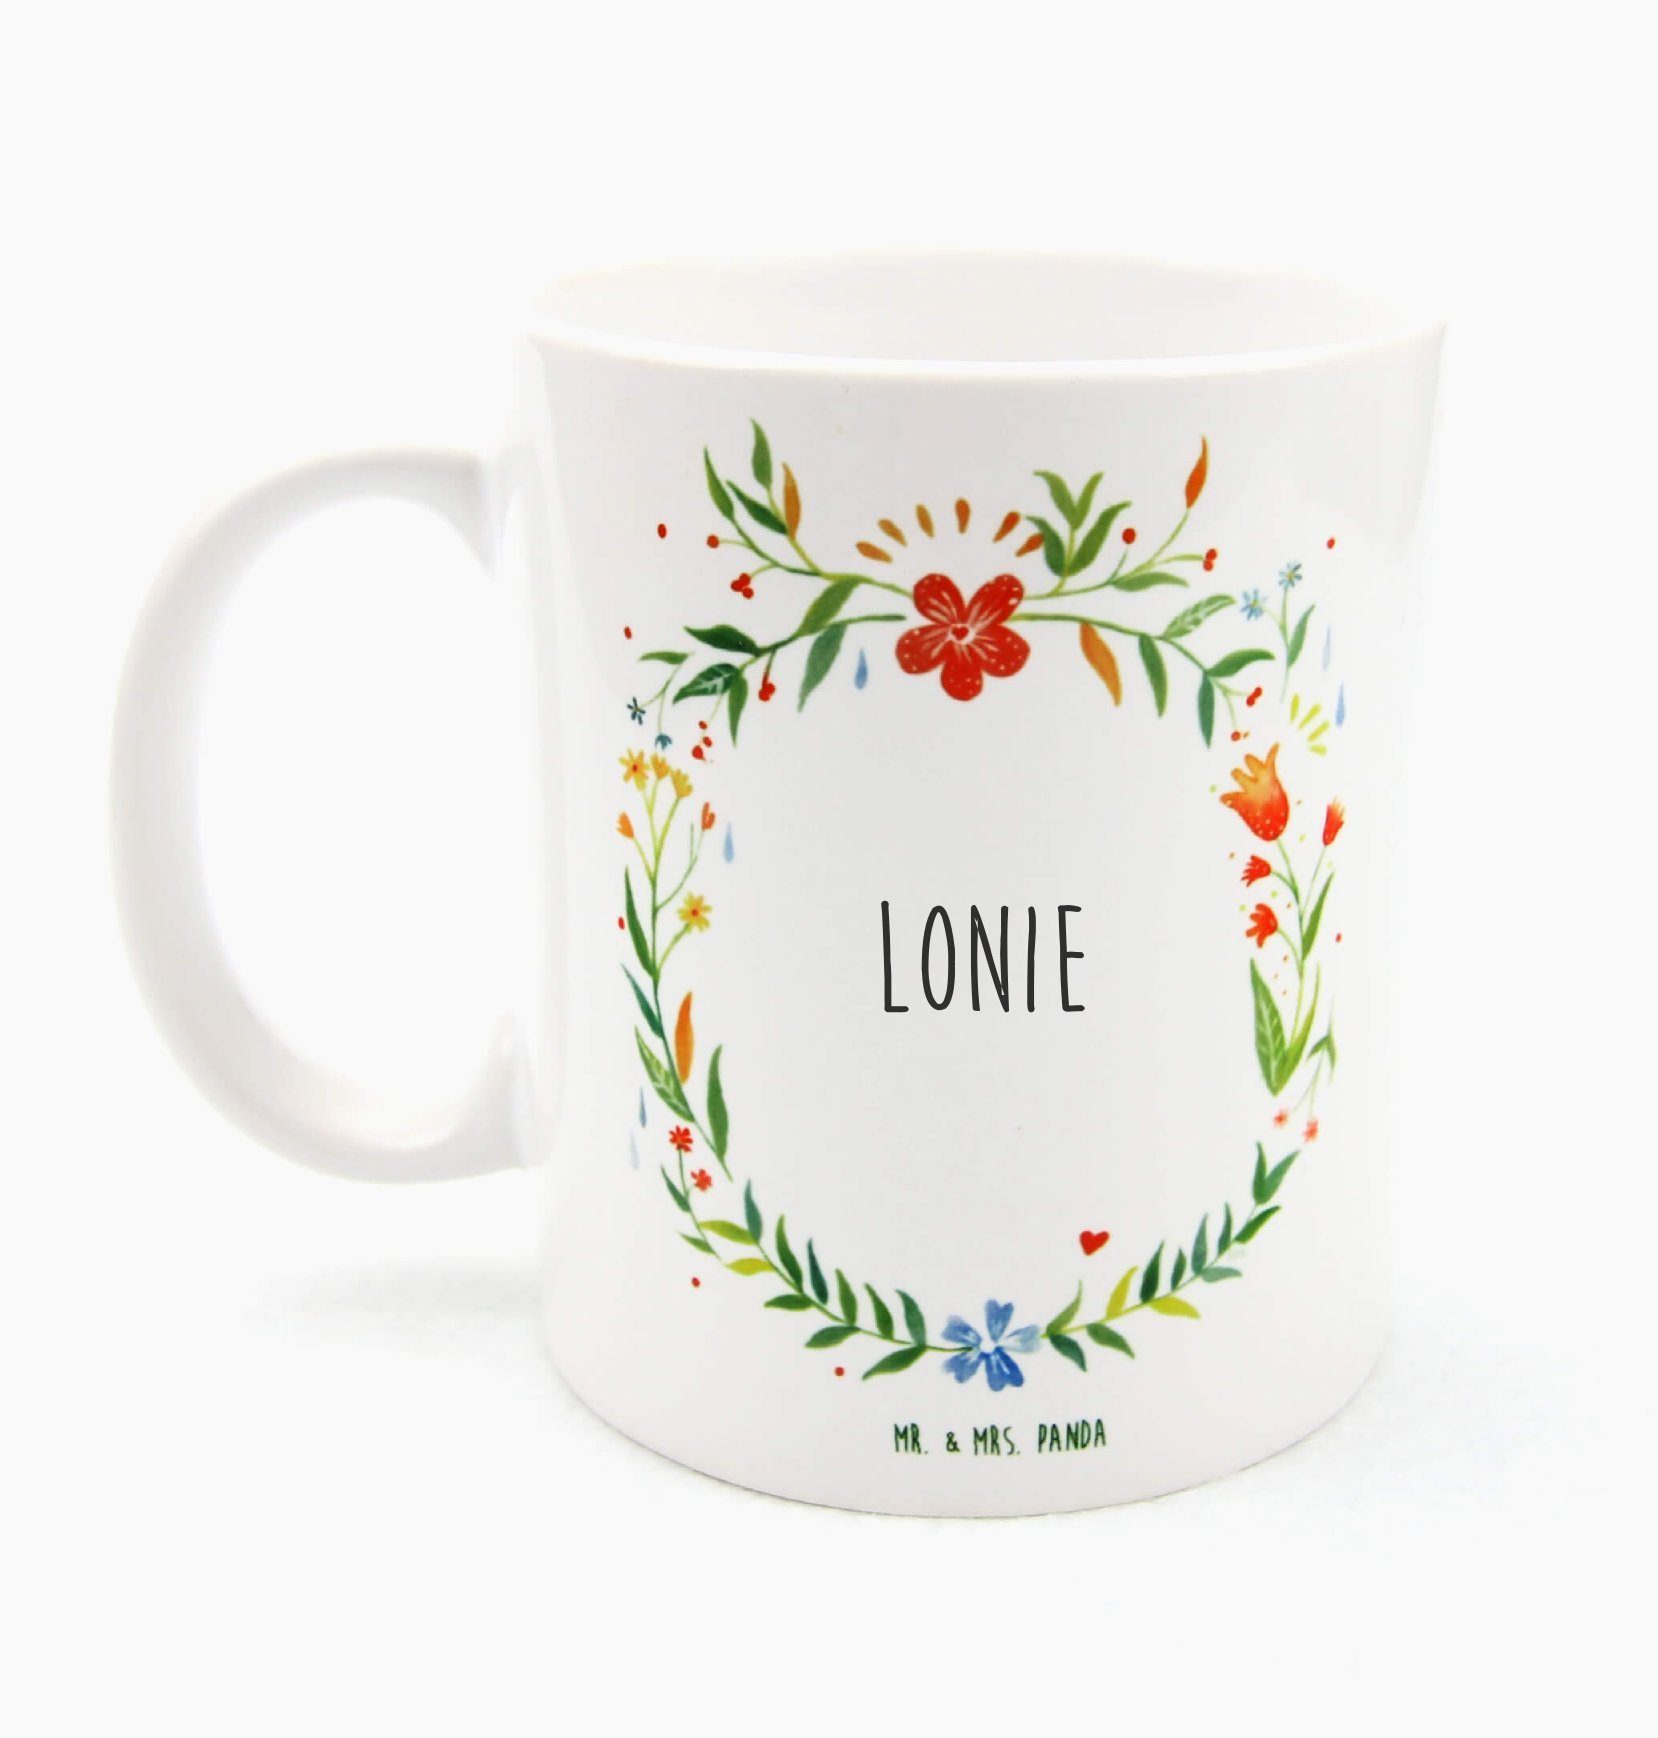 Mr. & Mrs. Panda Lonie Tasse Tasse Keramik Geschenk, - Motive, Kaffeetasse, Kaffeebec, Tasse Sprüche